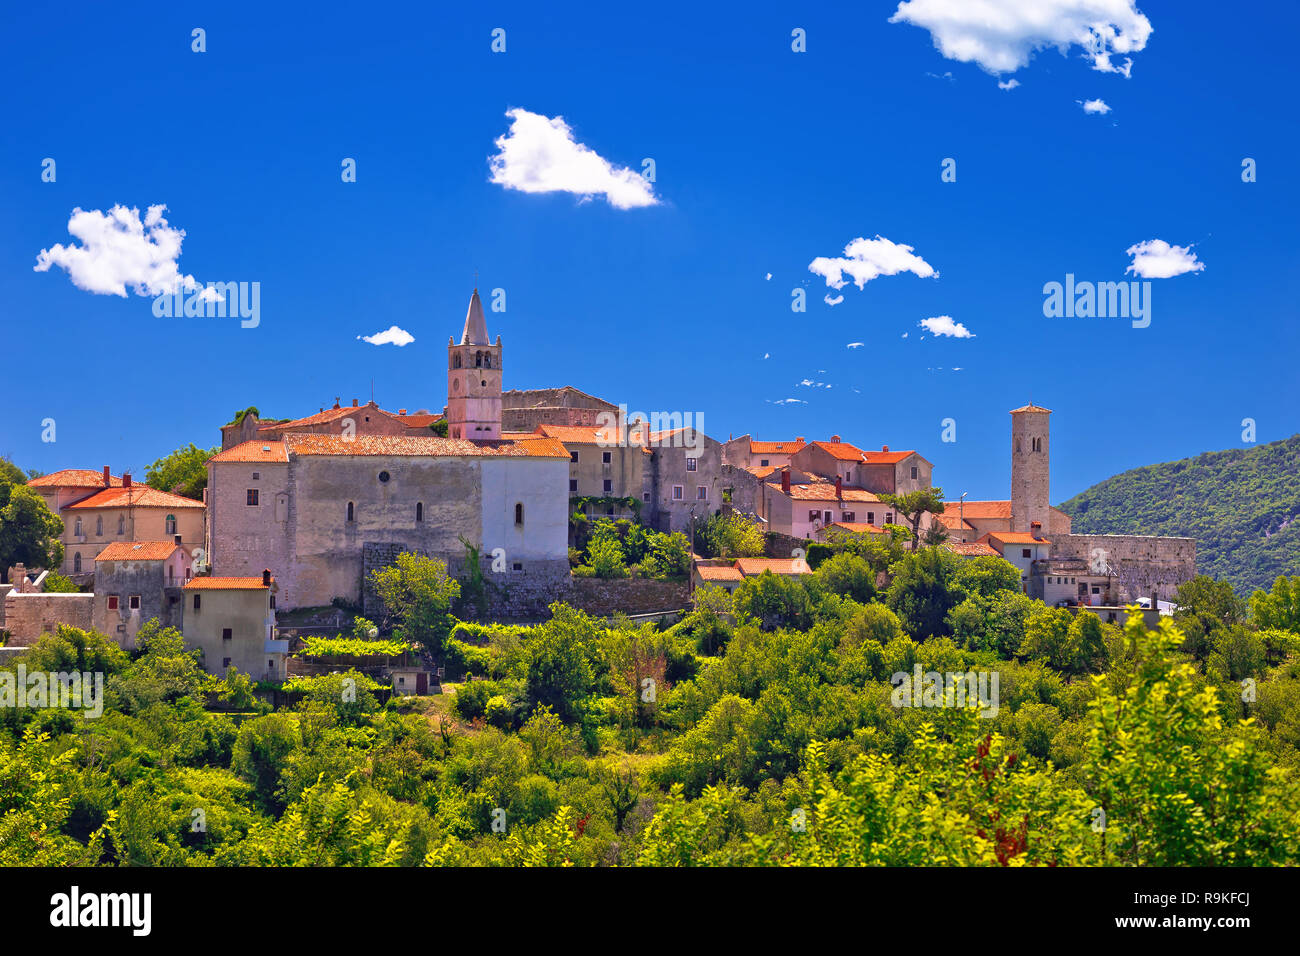 Idílico pueblo de piedra de Istria de Plomin en green hill view, región de Istria Croacia Foto de stock